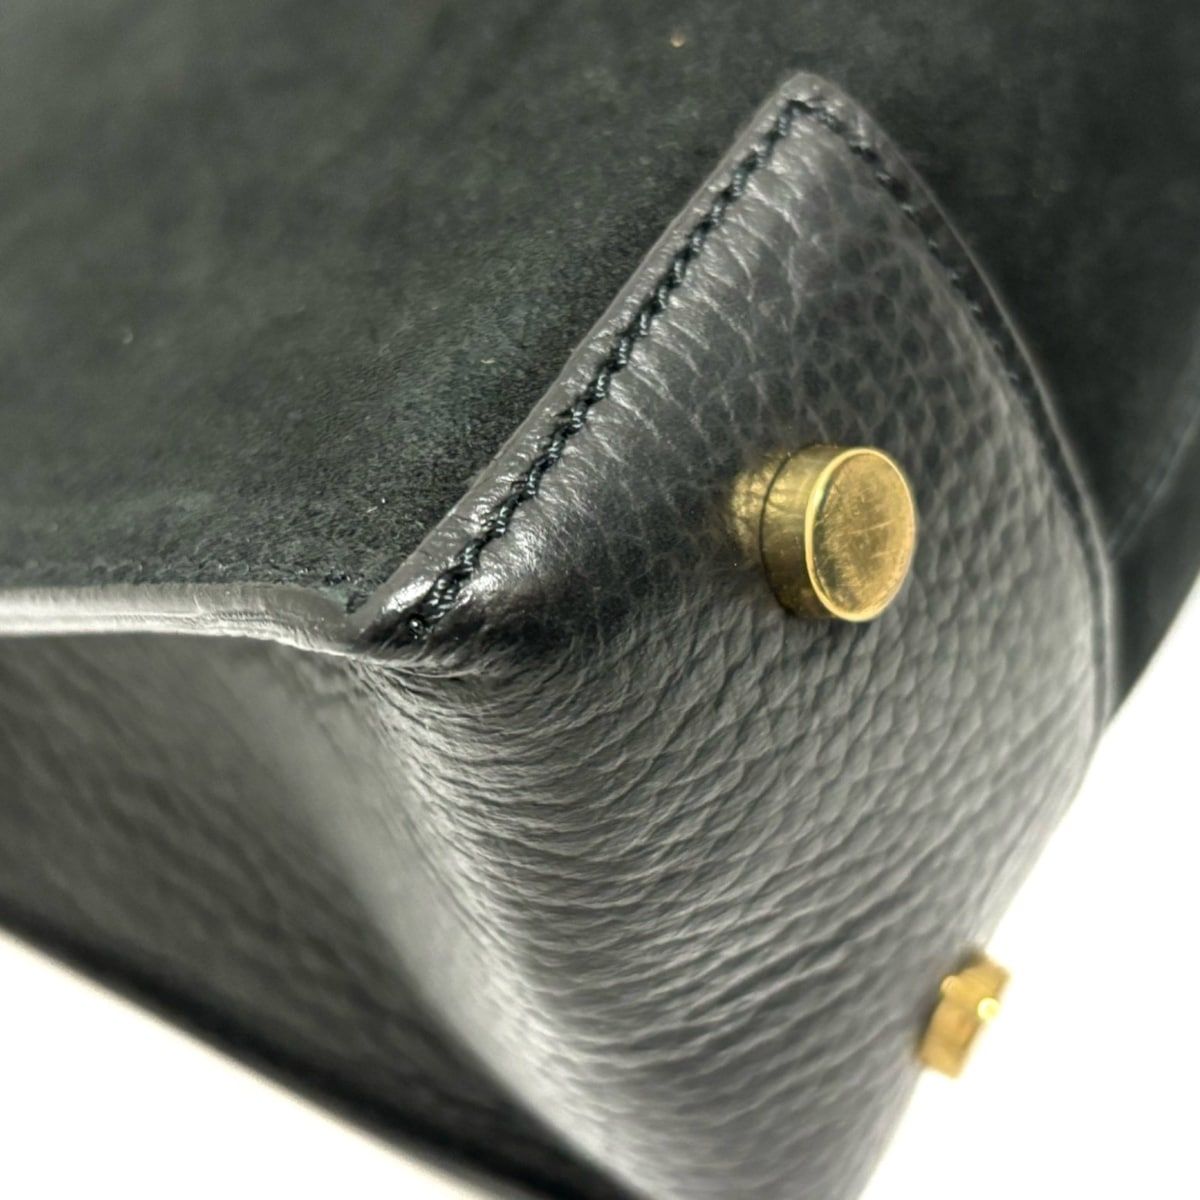 IACUCCI(イアクッチ) ハンドバッグ美品 黒×ゴールド スエード - メルカリ